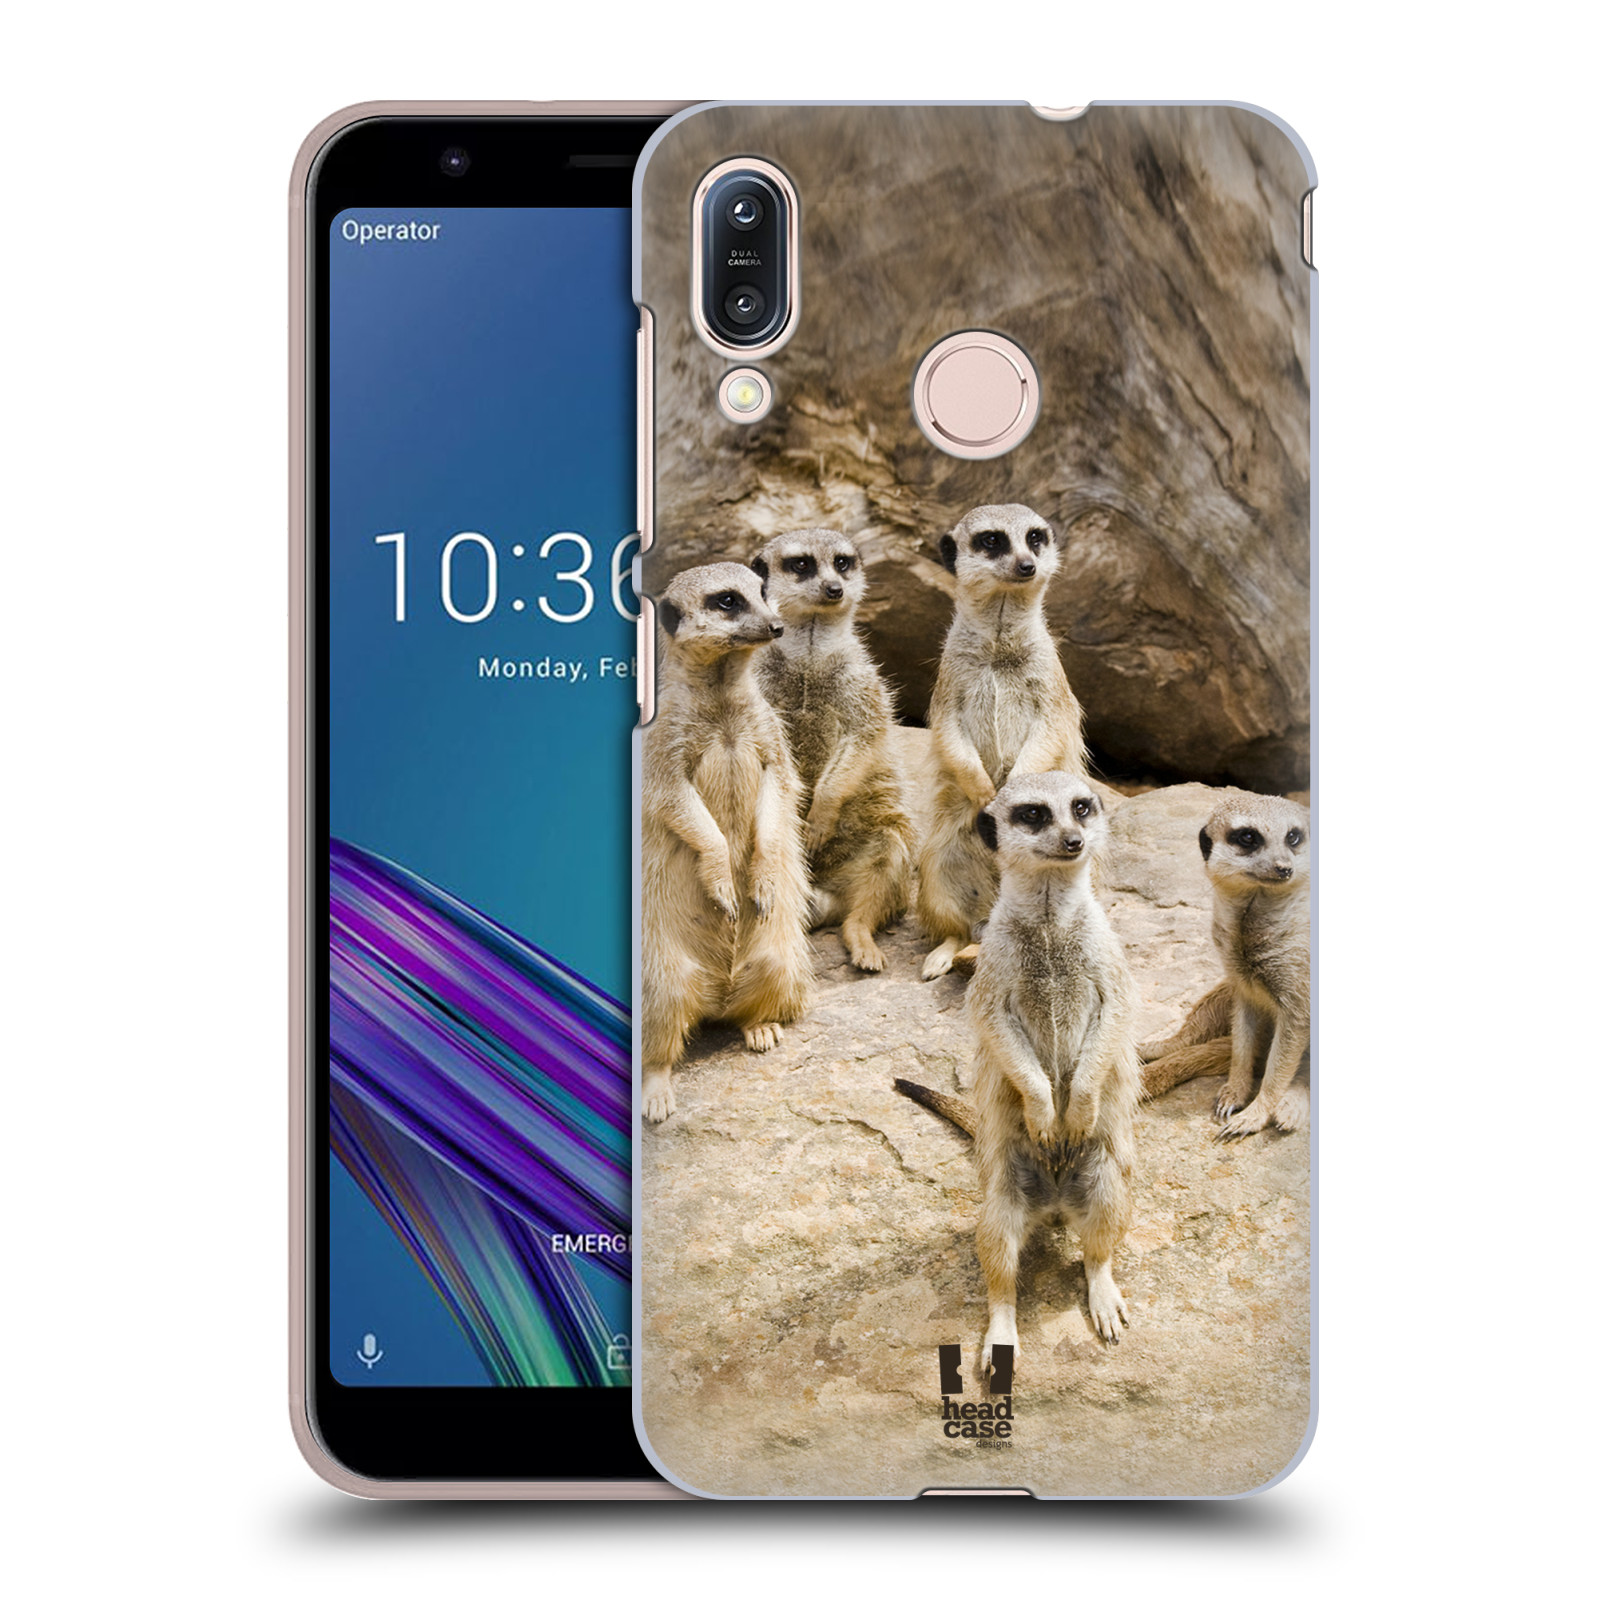 Pouzdro na mobil Asus Zenfone Max M1 (ZB555KL) - HEAD CASE - vzor Divočina, Divoký život a zvířata foto SURIKATA